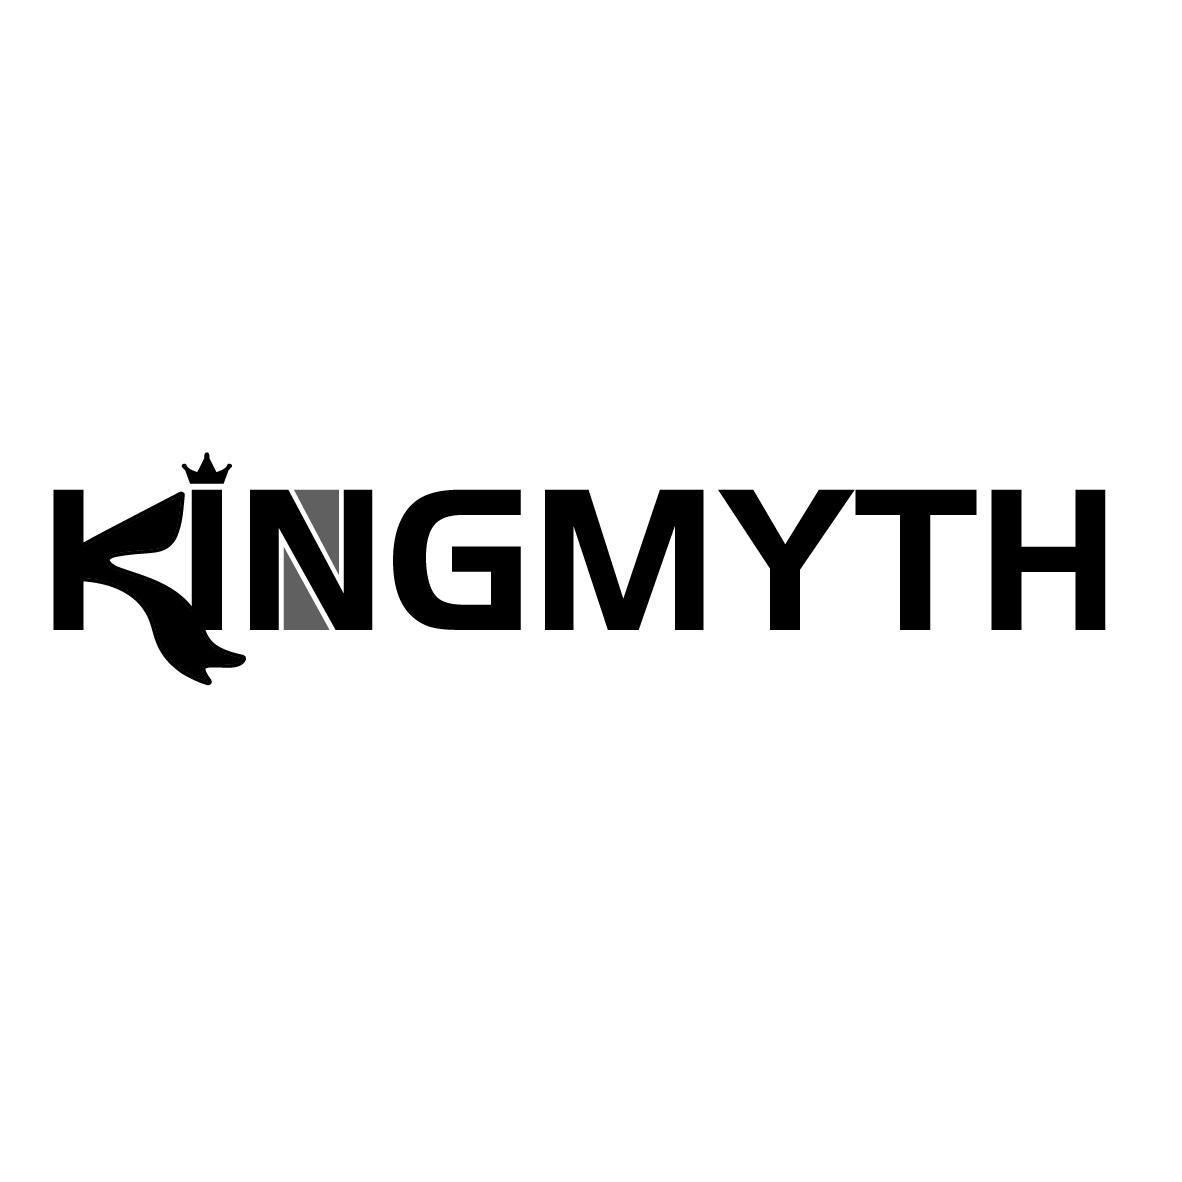 KINGMYTH